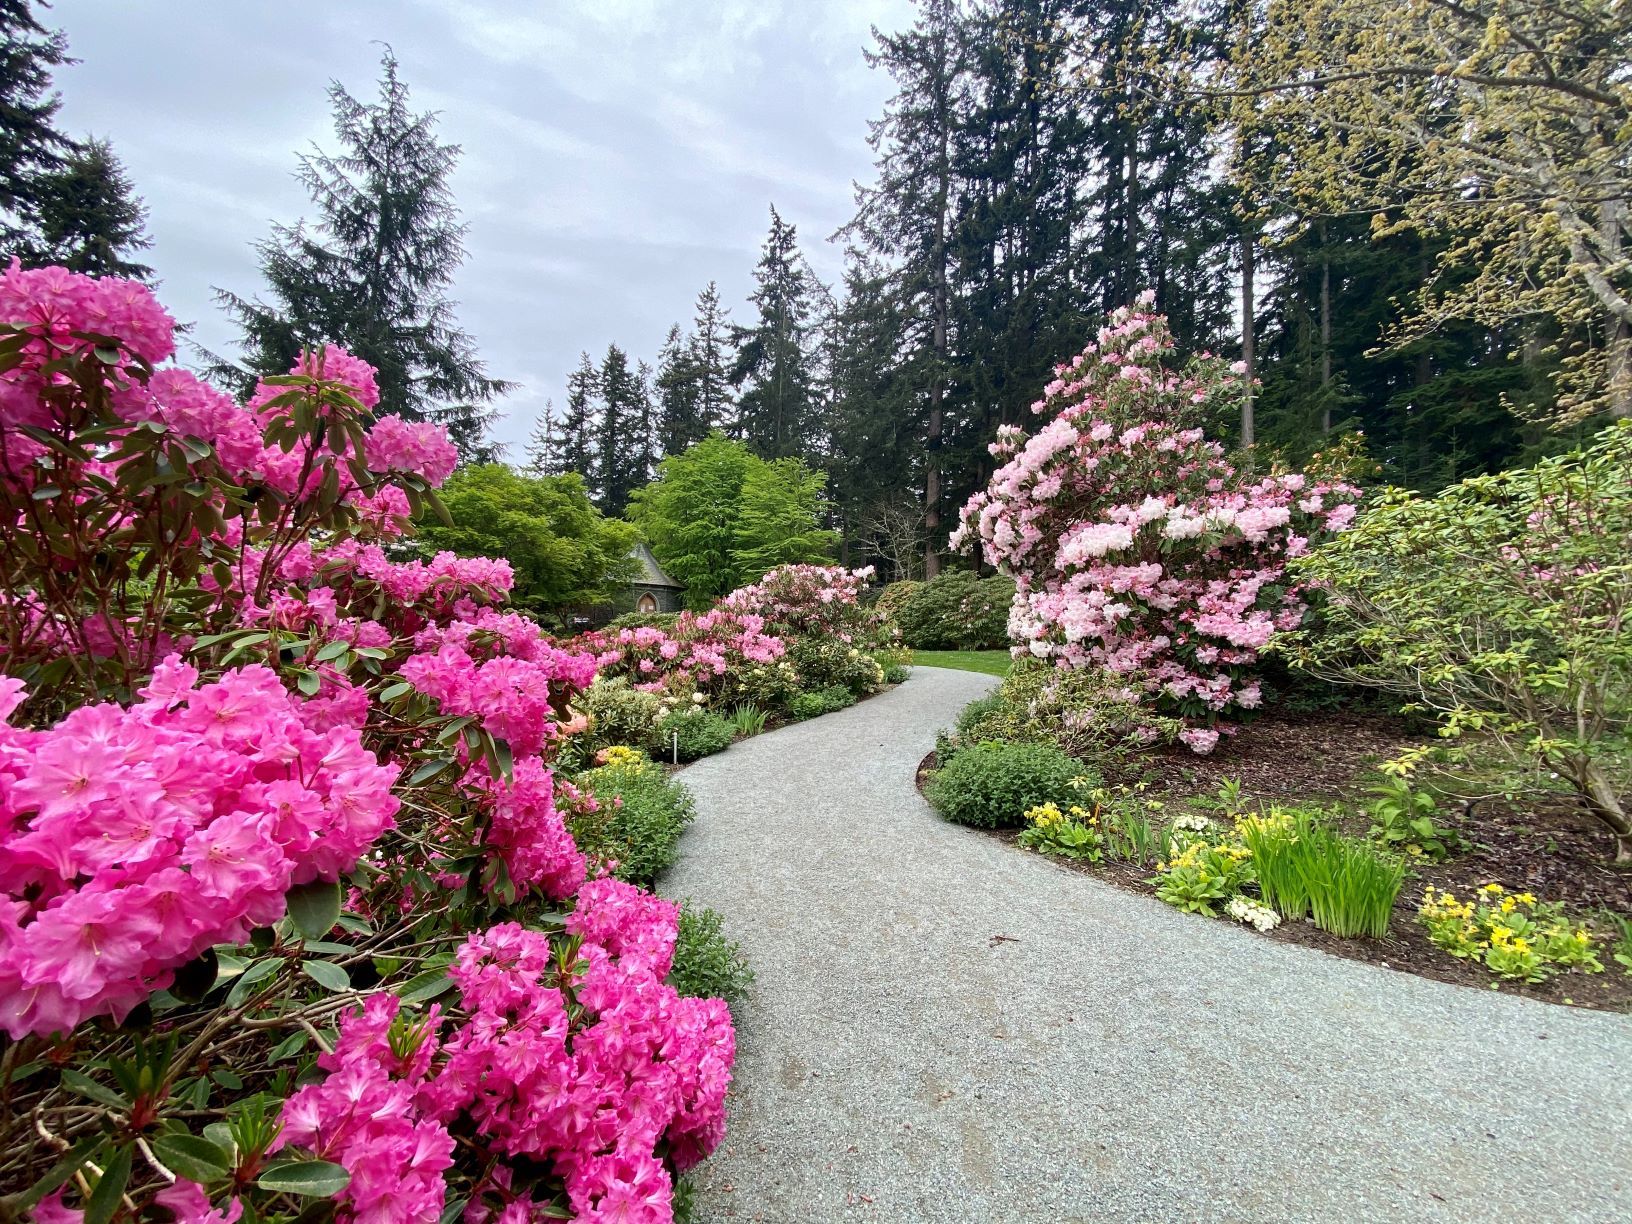 Meerkerk Rhododendron Gardens